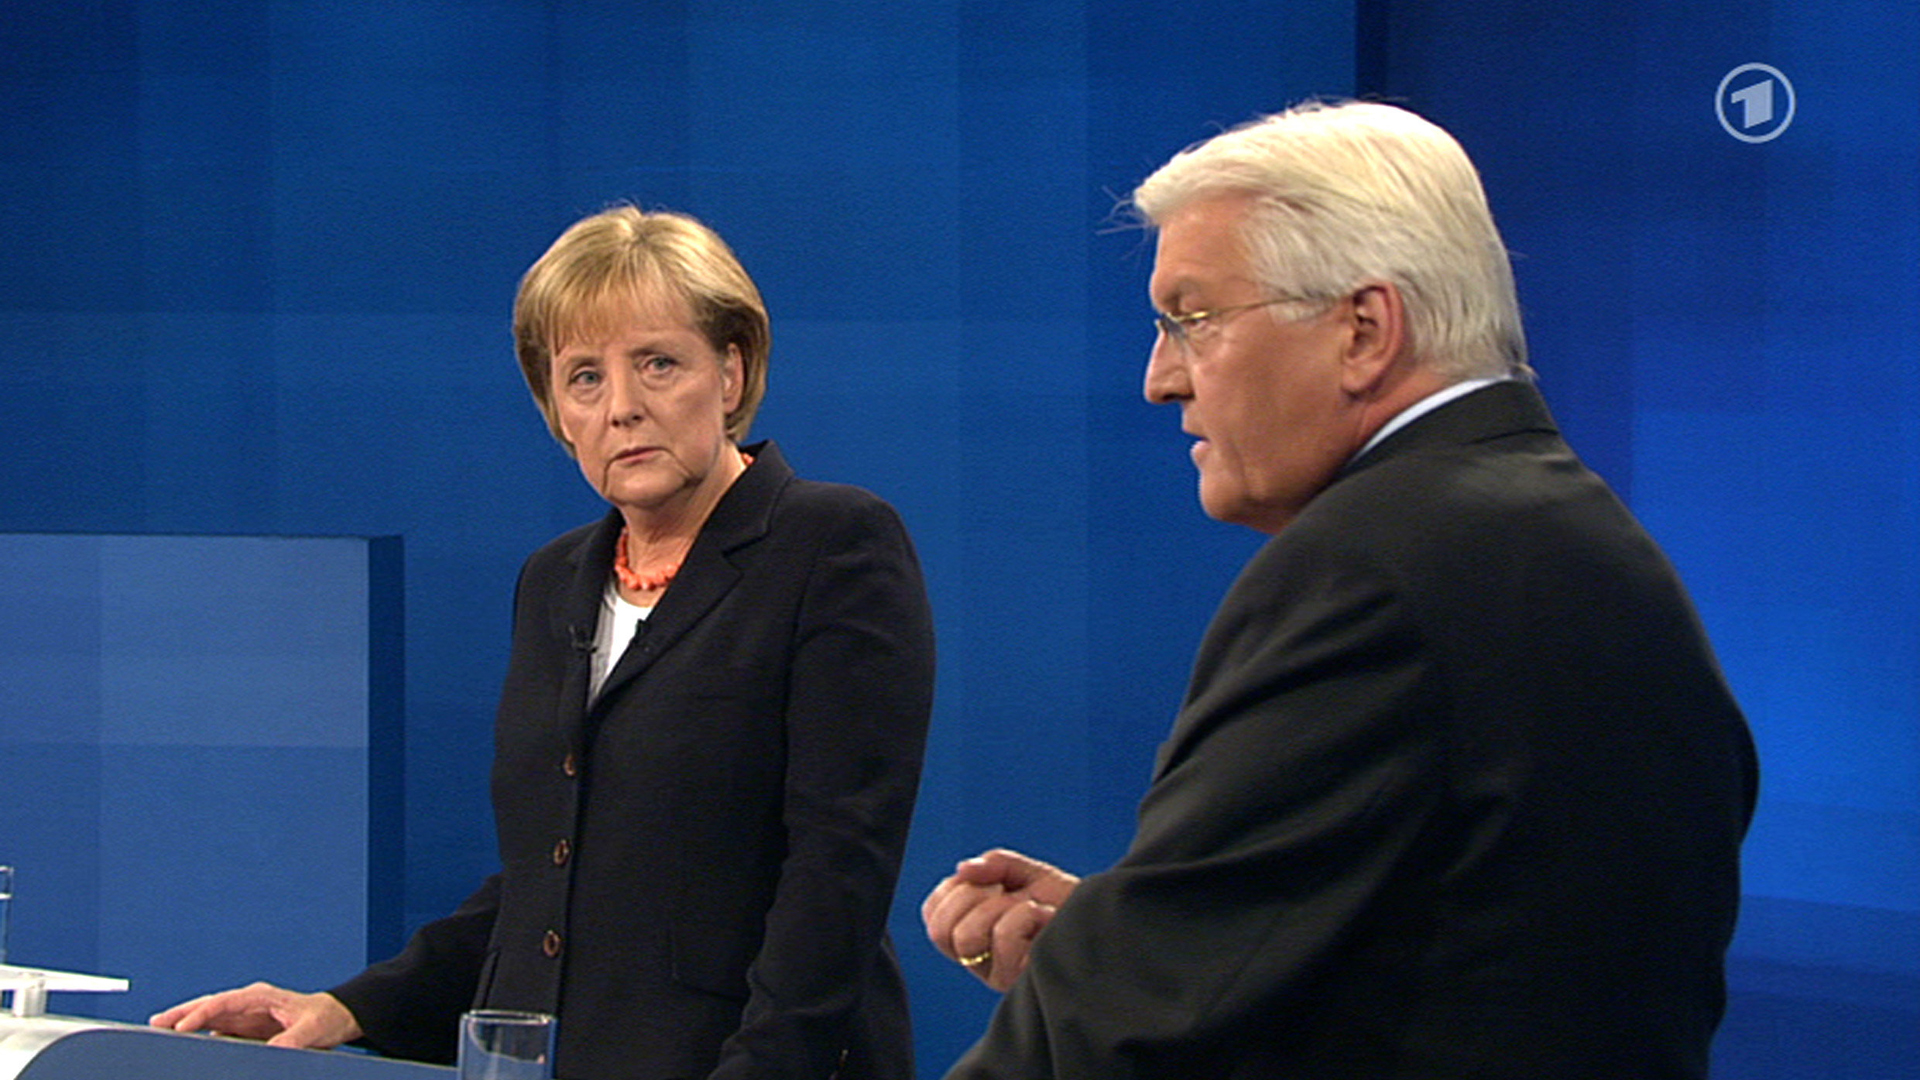 Bundeskanzlerin Angela Merkel (CDU) und Kanzlerkandidat Frank-Walter Steinmeier (SPD) während des TV-Duells am 13.09.2009 | dpa